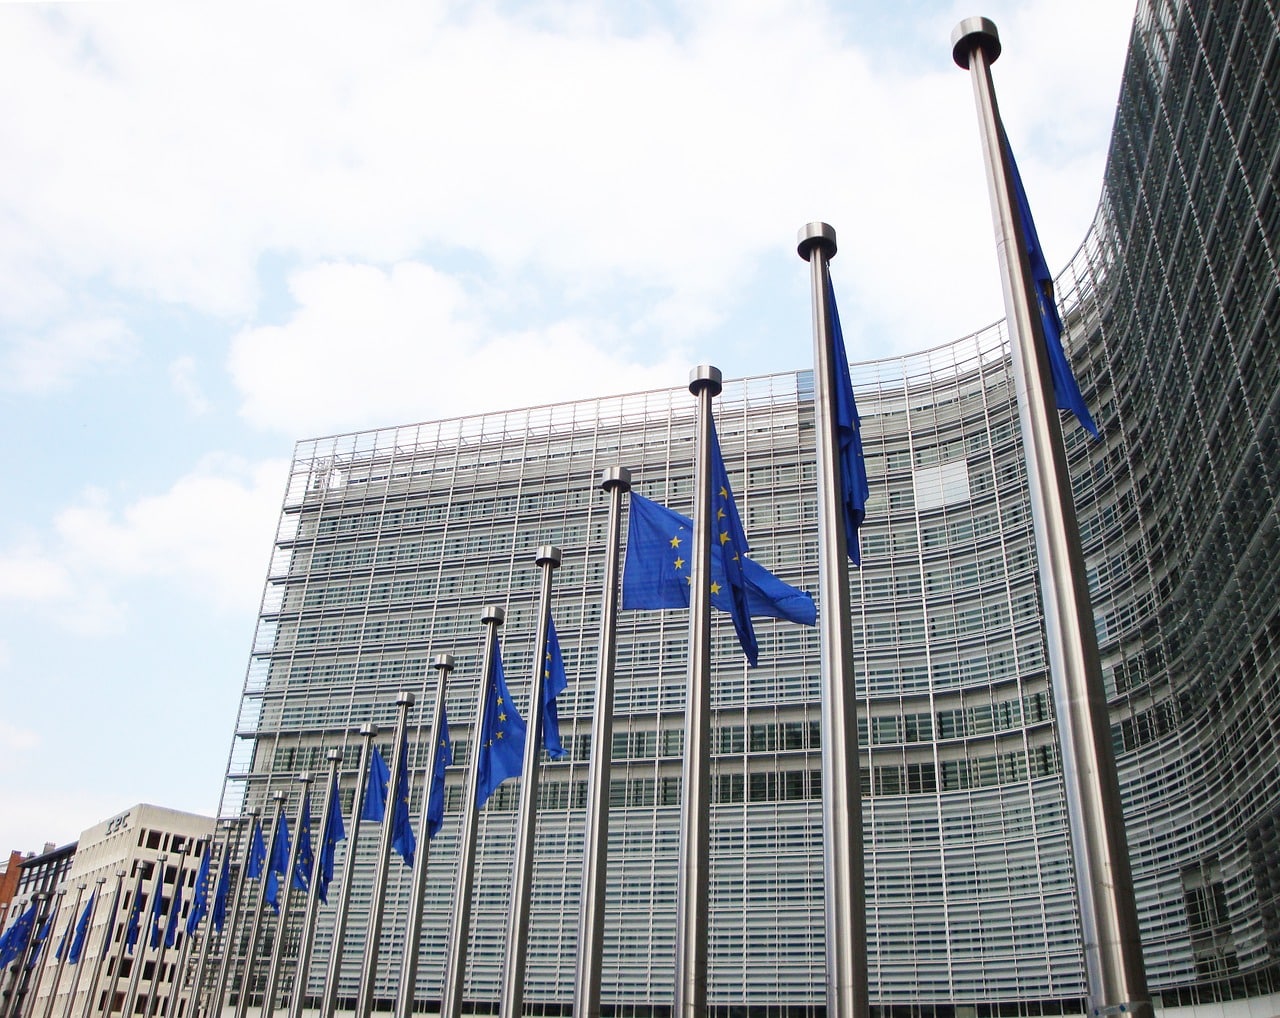 La commission européenne à Bruxelles. Image by Jai79 on Pixabay